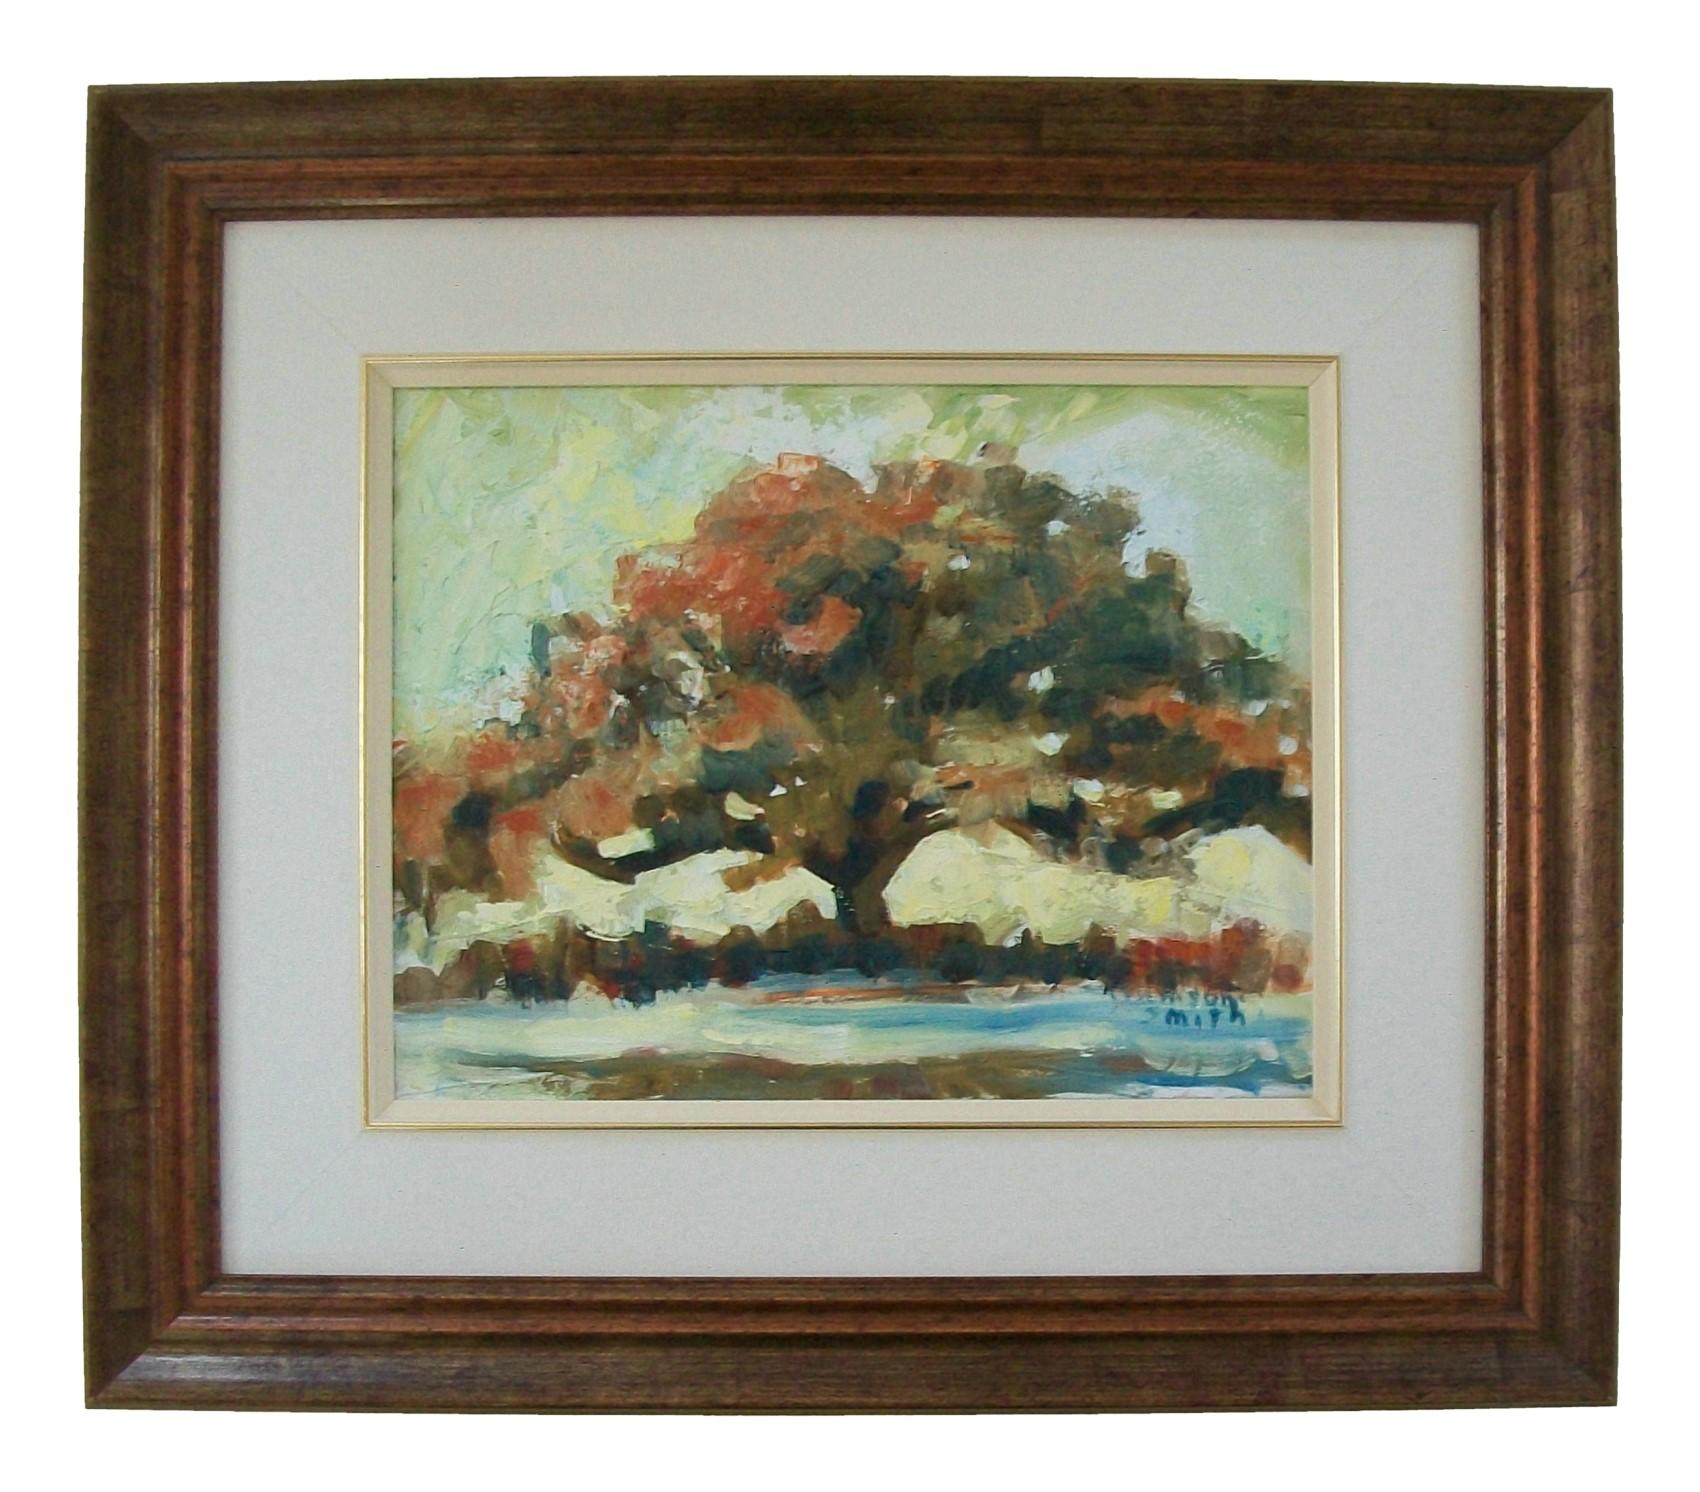 Peinture acrylique post-impressionniste de paysage sur toile tendue - présentant un grand arbre au premier plan - finition avec un mat de tissu avec filet doré composite - cadre en bois doré en cuivre avec une finition antique - indistinctement